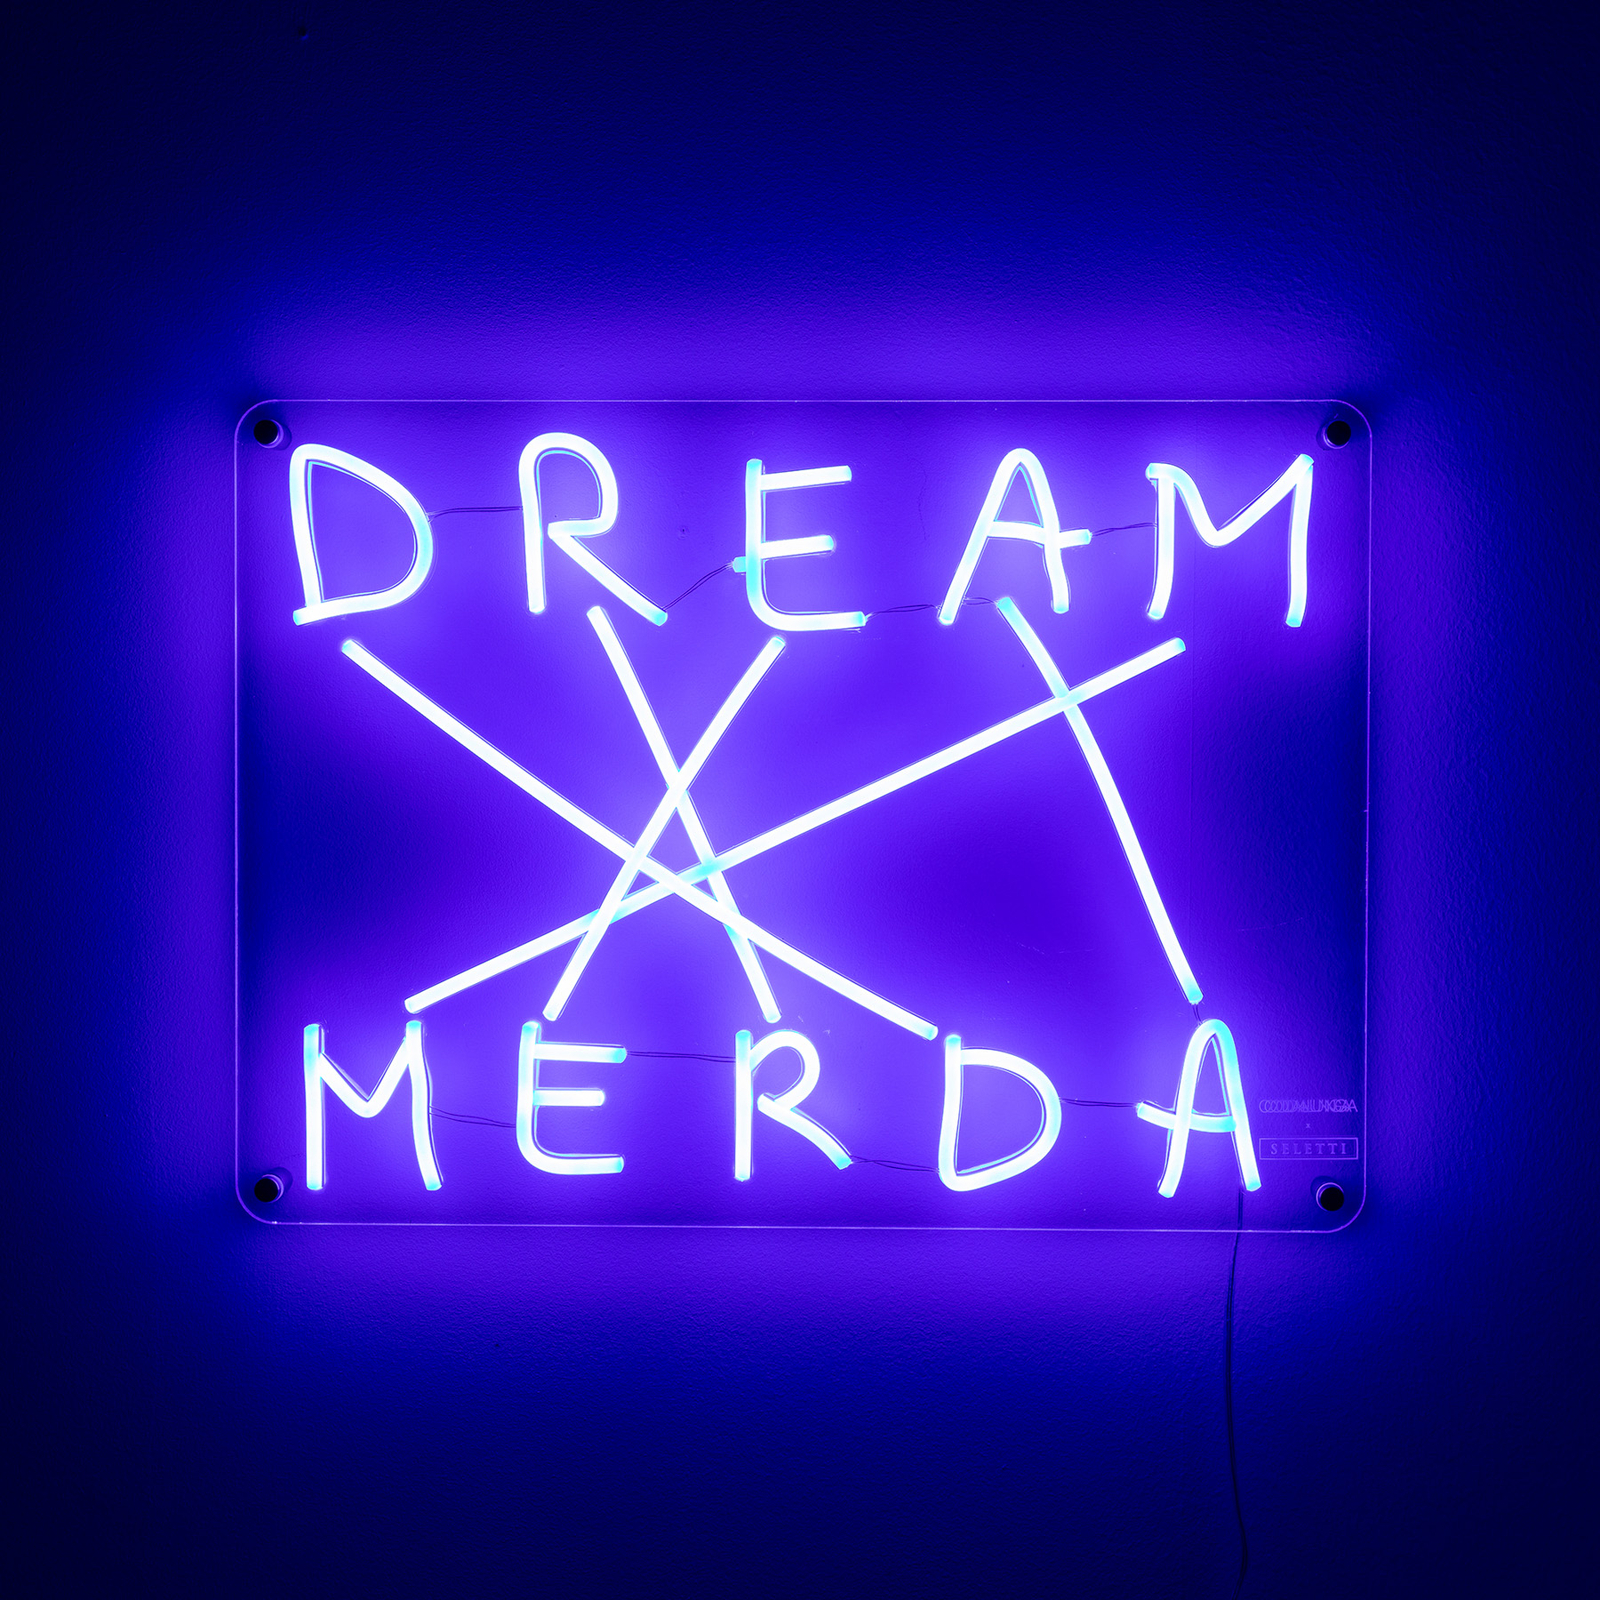 LED decoratie-wandlamp Dream-Merda, blauw